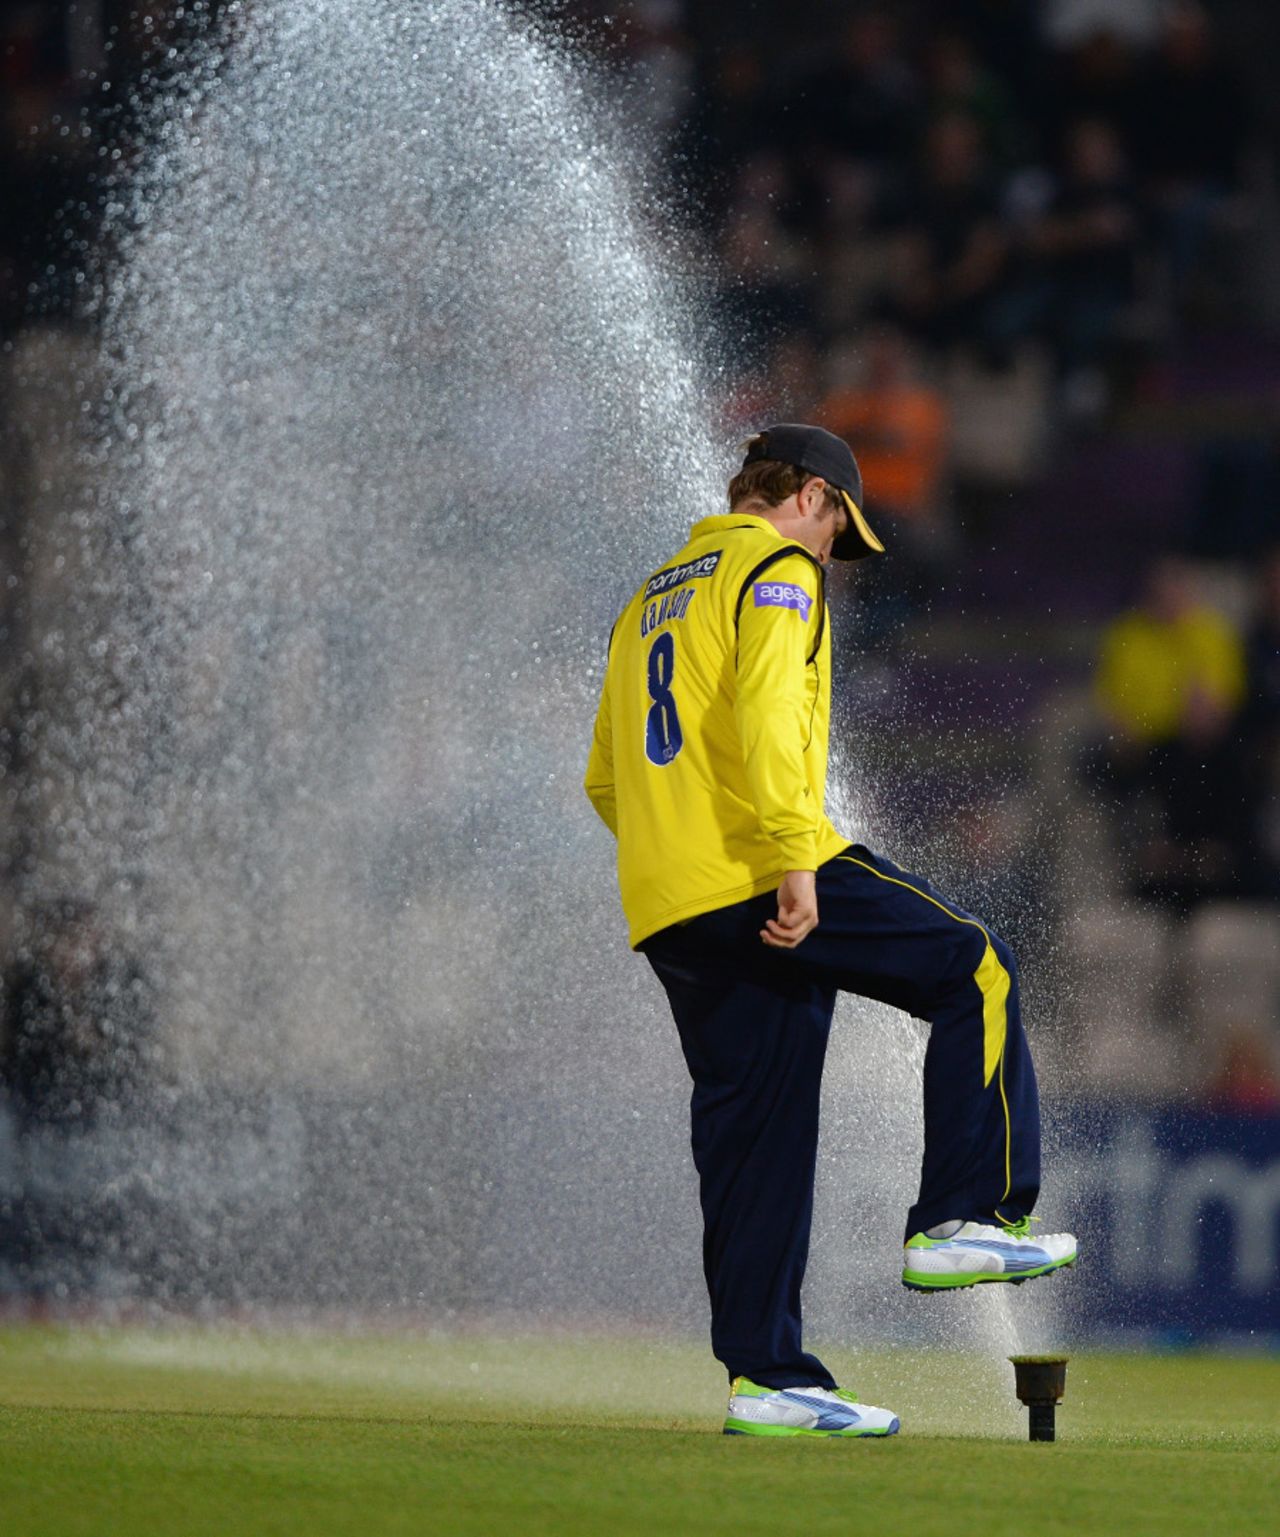 Liam Dawson tries to stop a sprinkler, Hampshire v Lancashire, Friends Life t20 quarter-final, Ageas Bowl, August 7, 2013